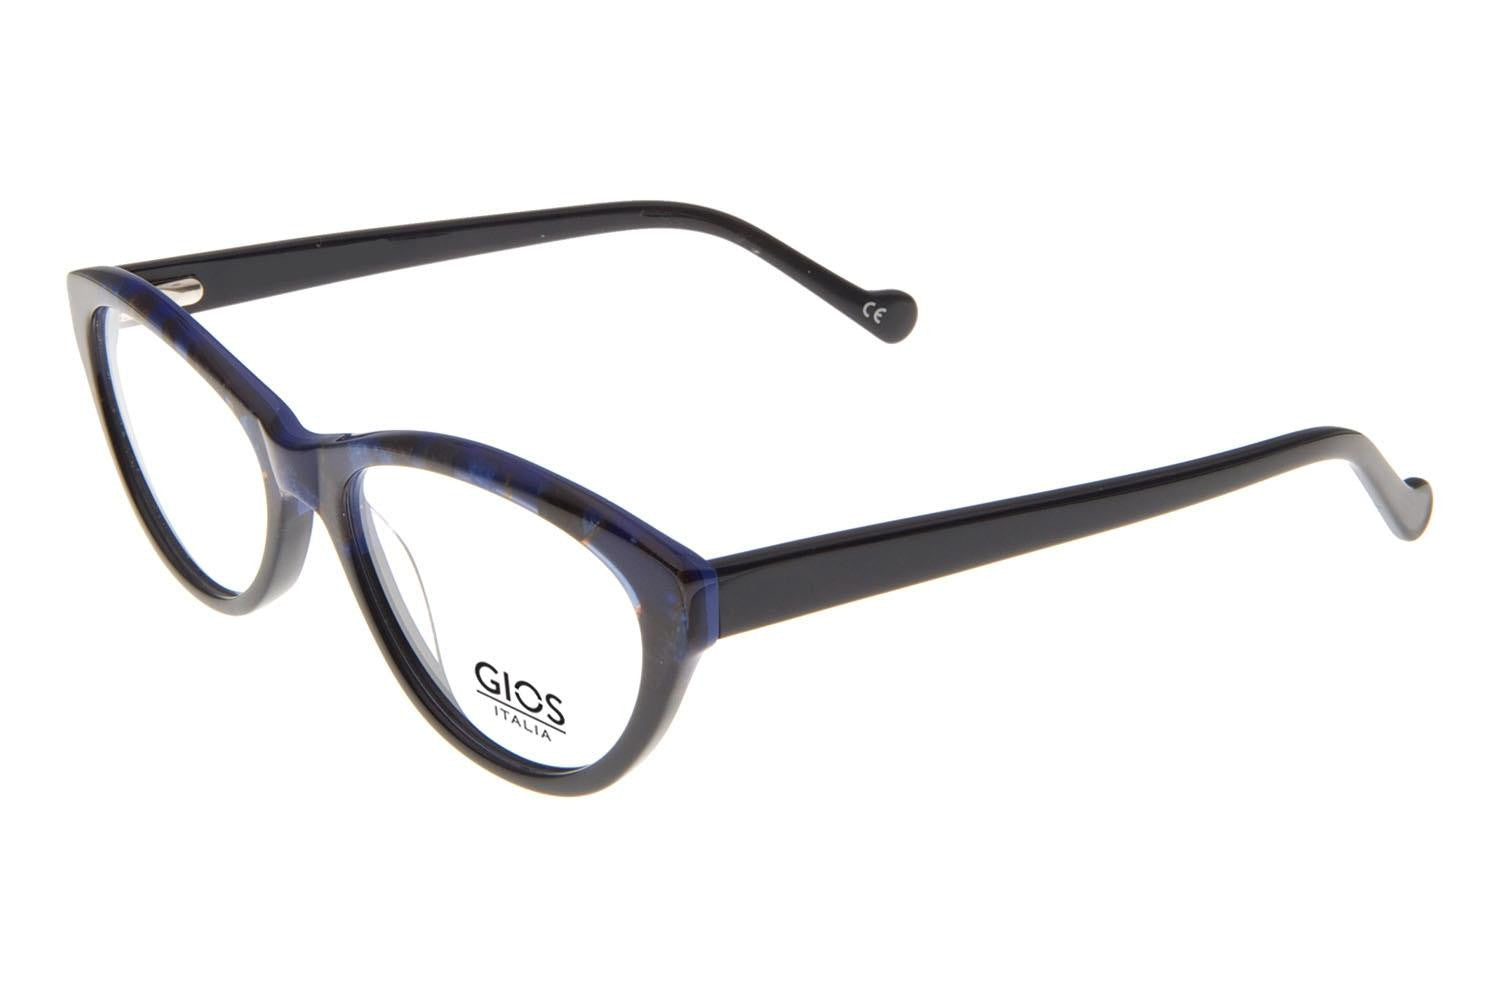 GIOS ITALIA Eyeglasses GRF500092 - Go-Readers.com